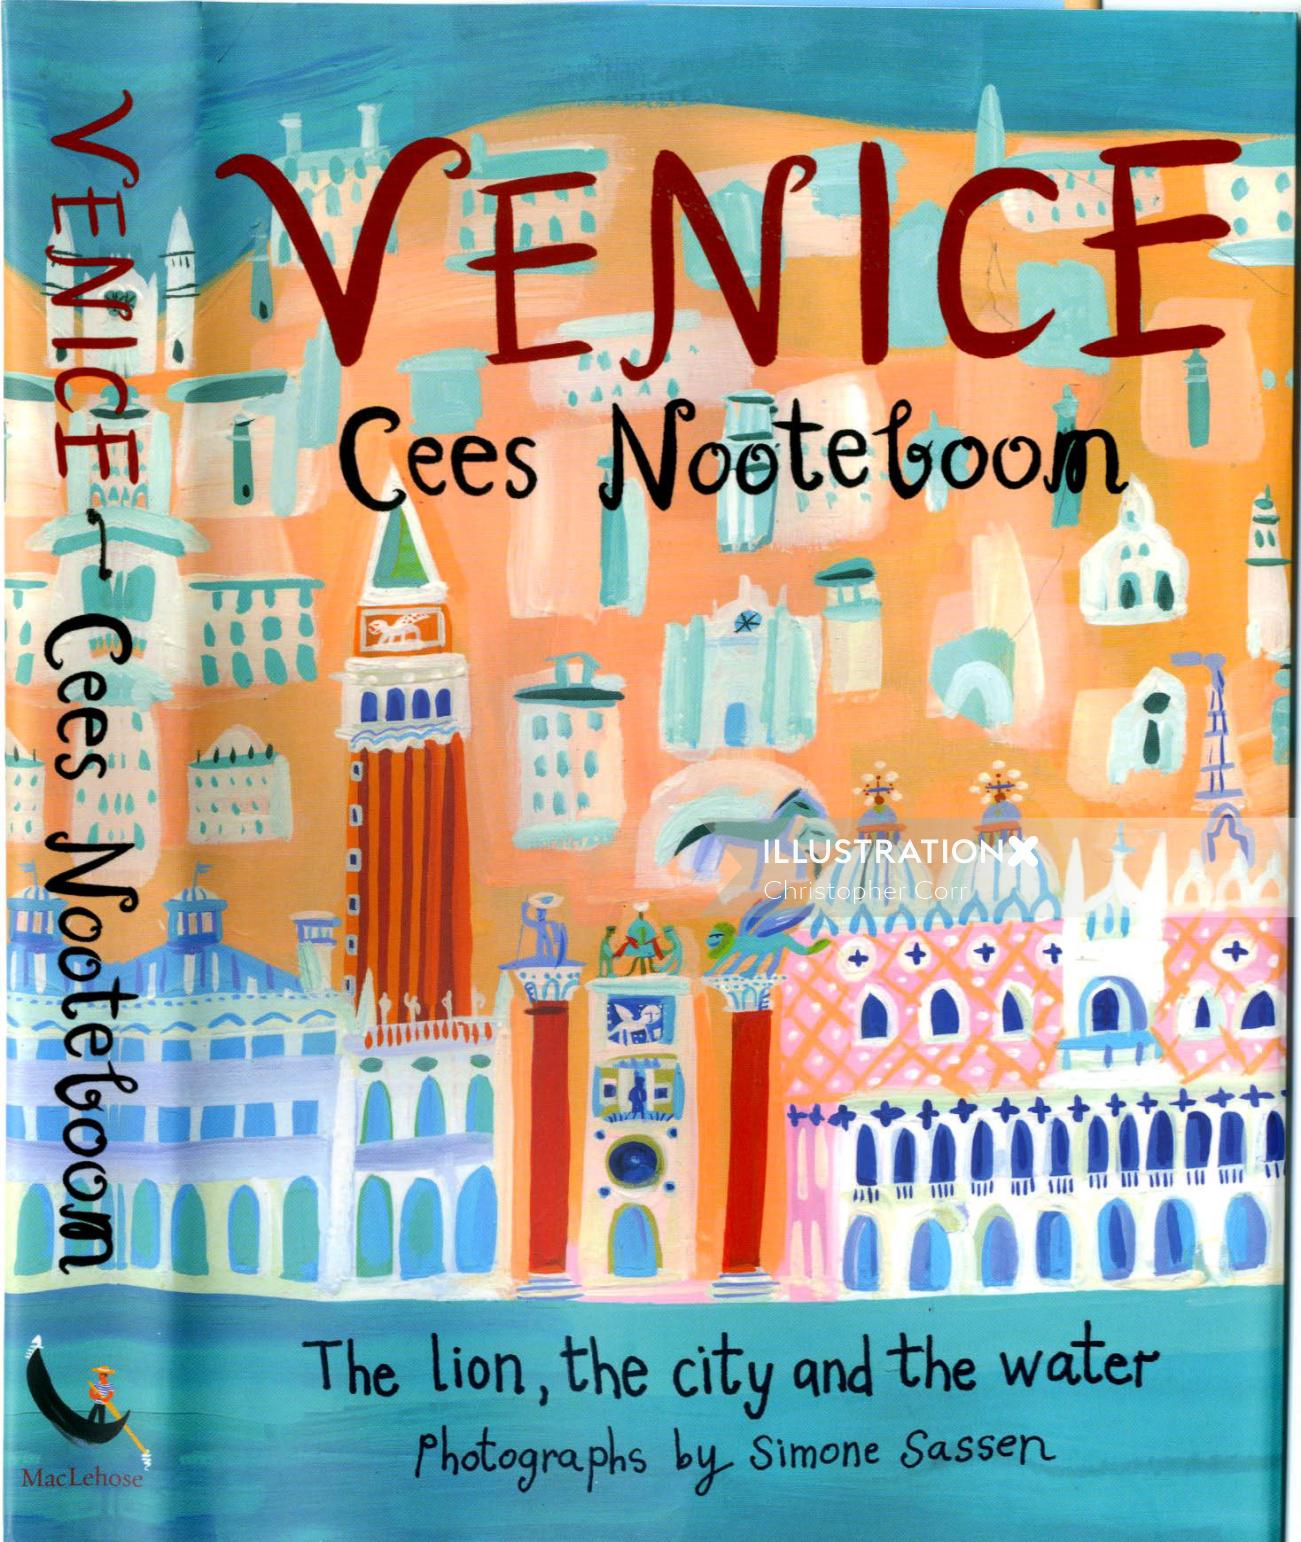 Capa de livro Veneza